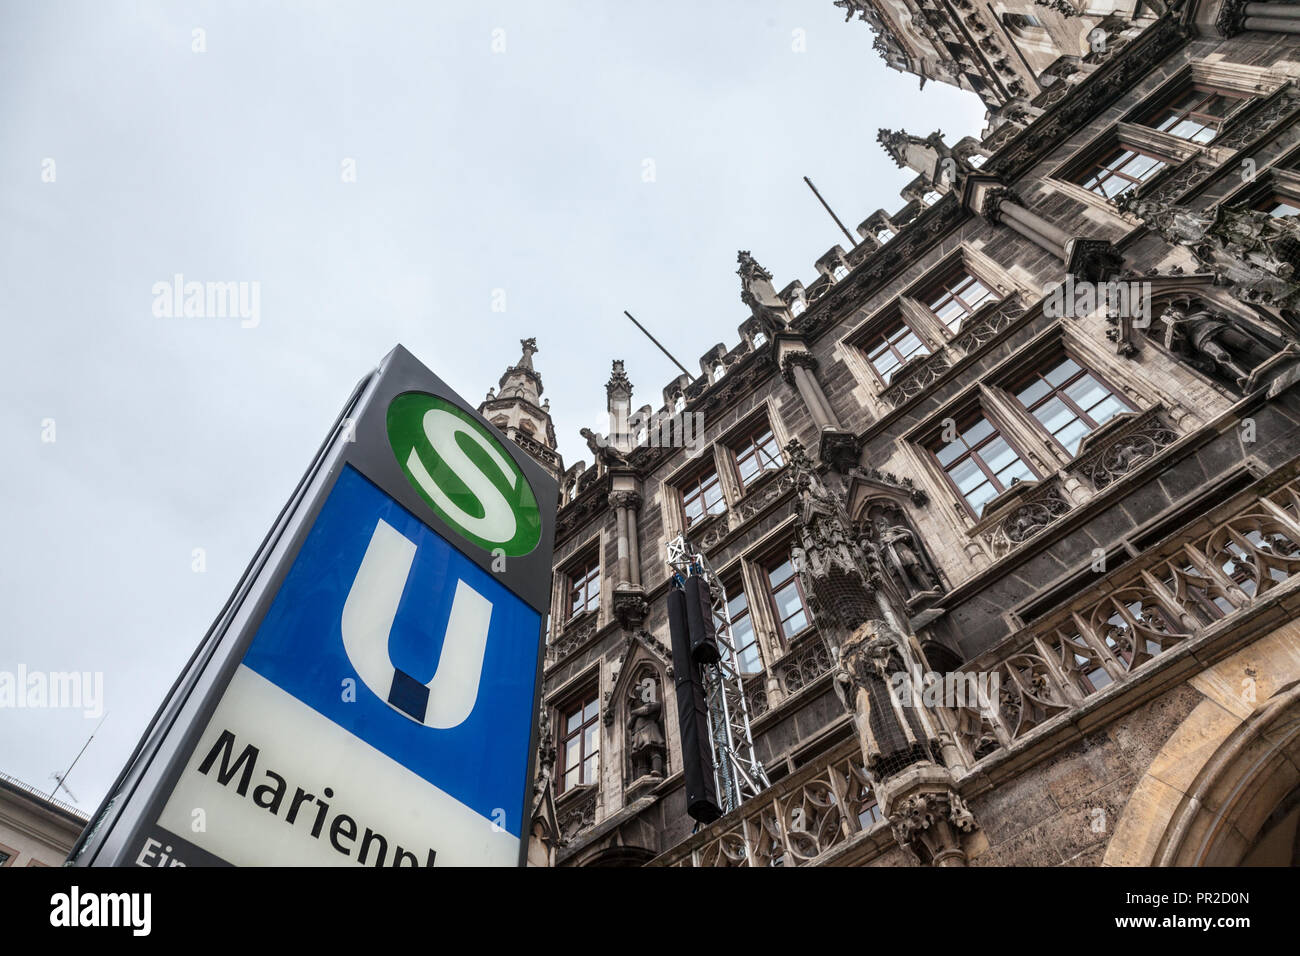 MUNICH, ALLEMAGNE - le 18 décembre 2017 : S Bahn et U Bahn signe sur leur entrée sur la place Marienplatz, le principal monument de Munich. SBahn & UBahn sont le métro Banque D'Images